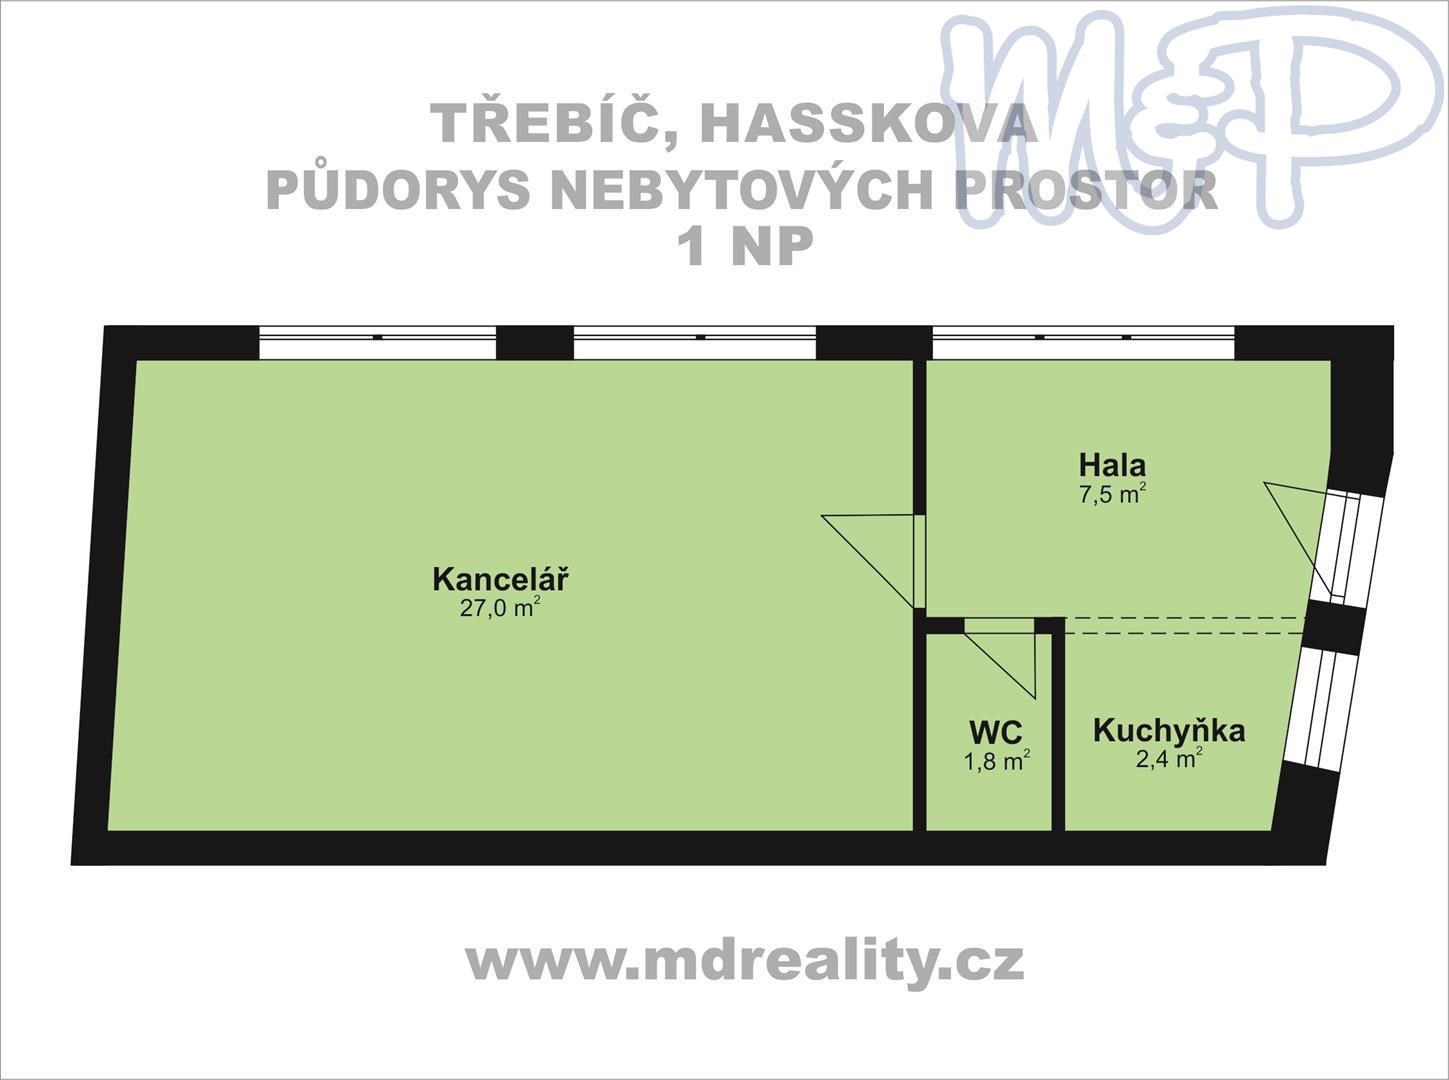 Pronájem kancelářských prostorů v historickém centru Třebíče (1NP)